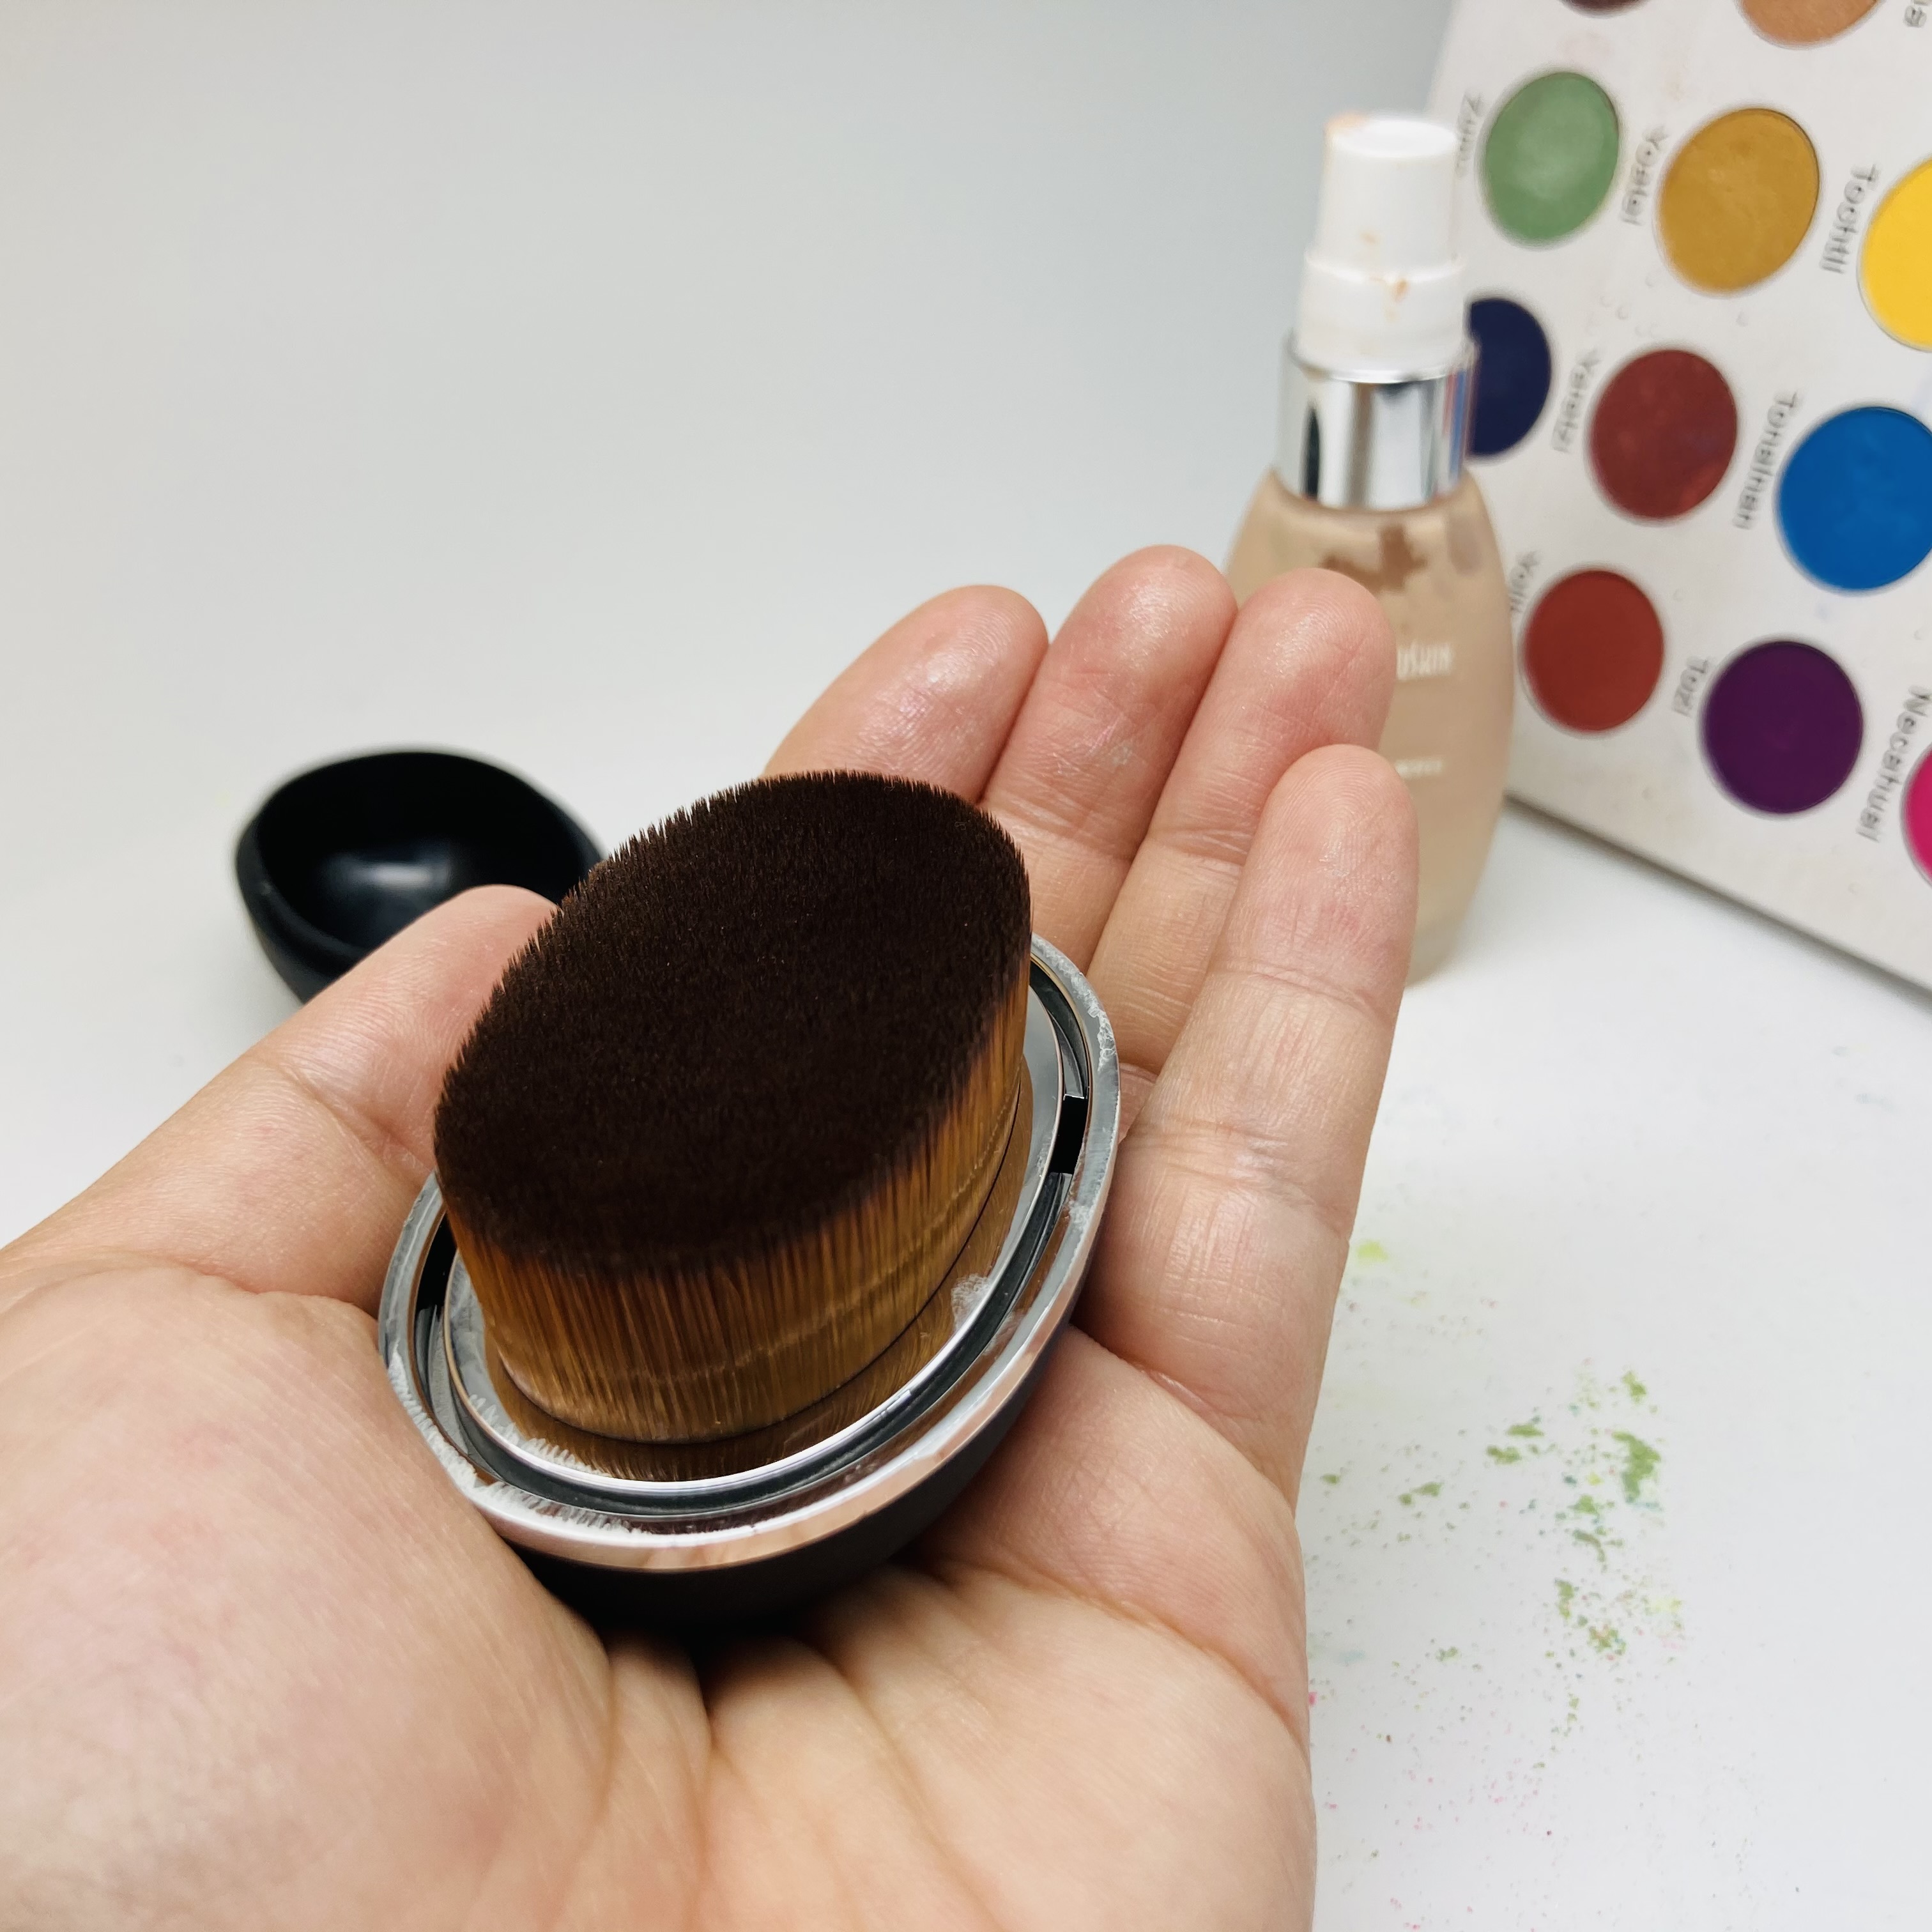 Nuova scatola magica di plastica ovale fabbricazione di pennelli per trucco per fondotinta in polvere cosmetica